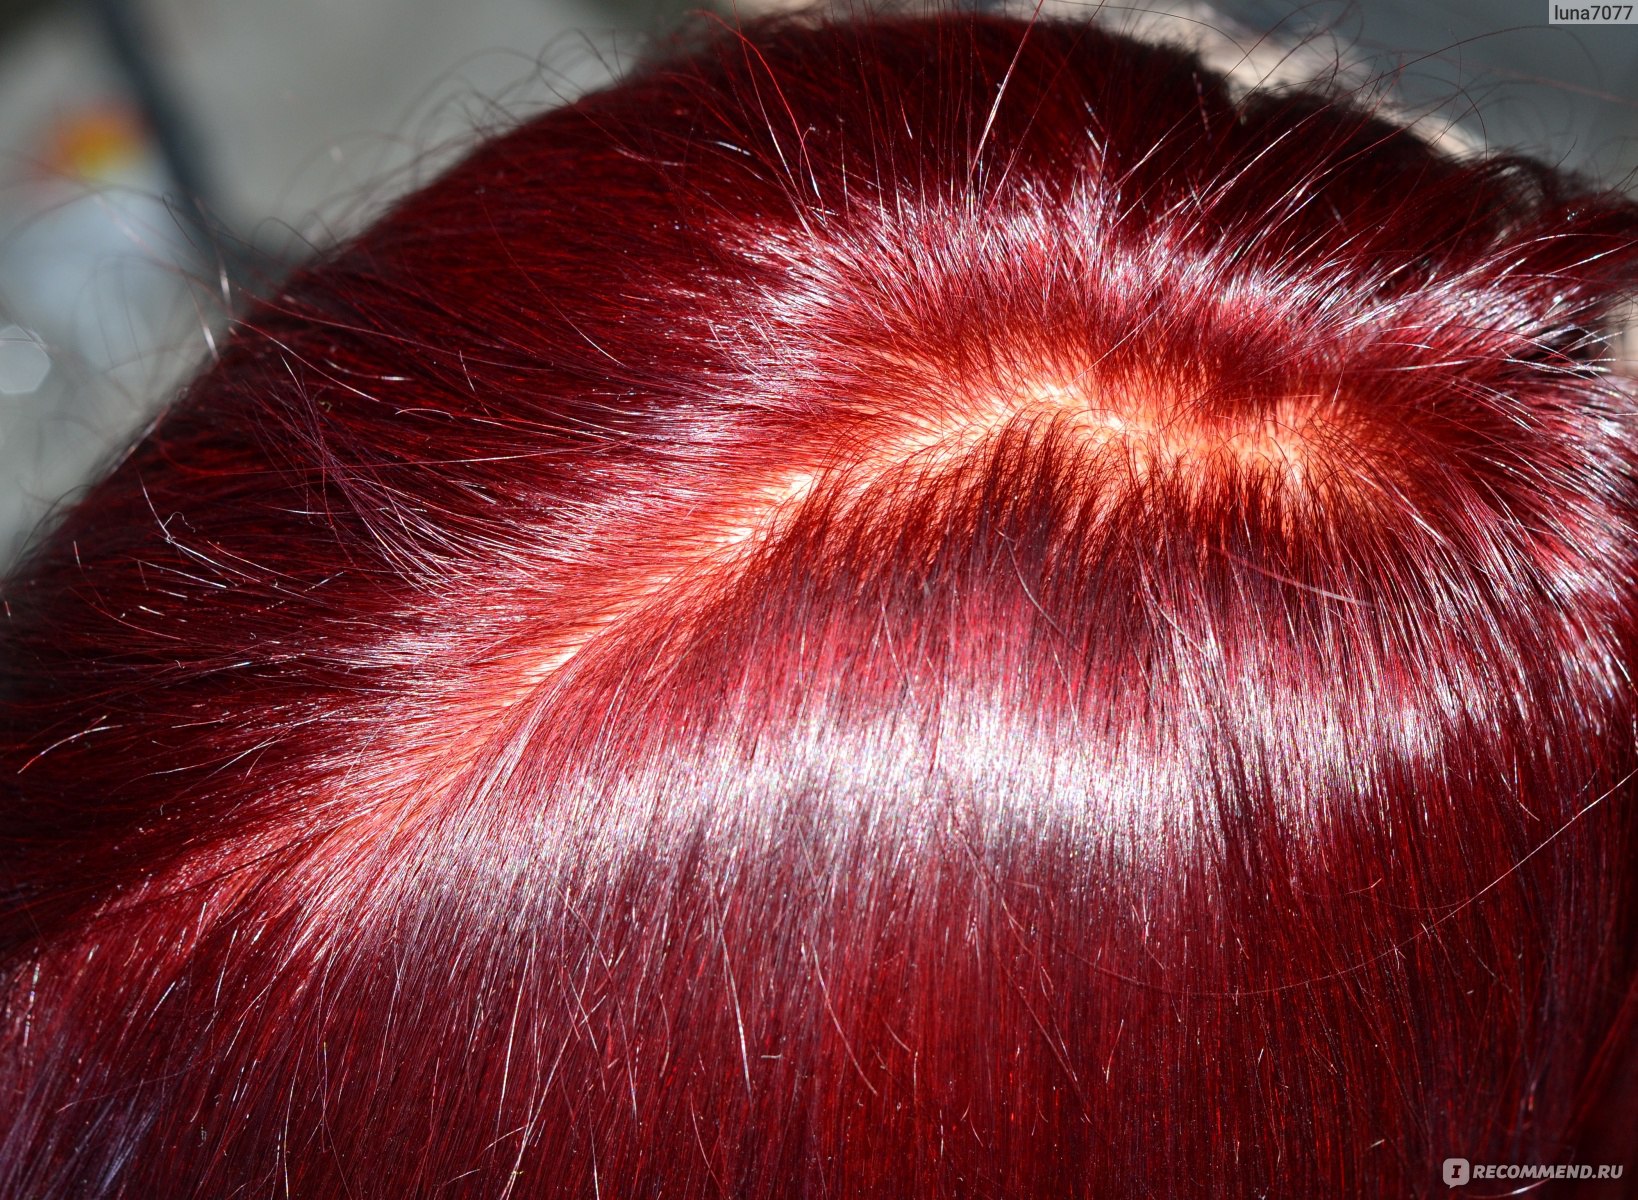 Краска для волос пылающий рубин